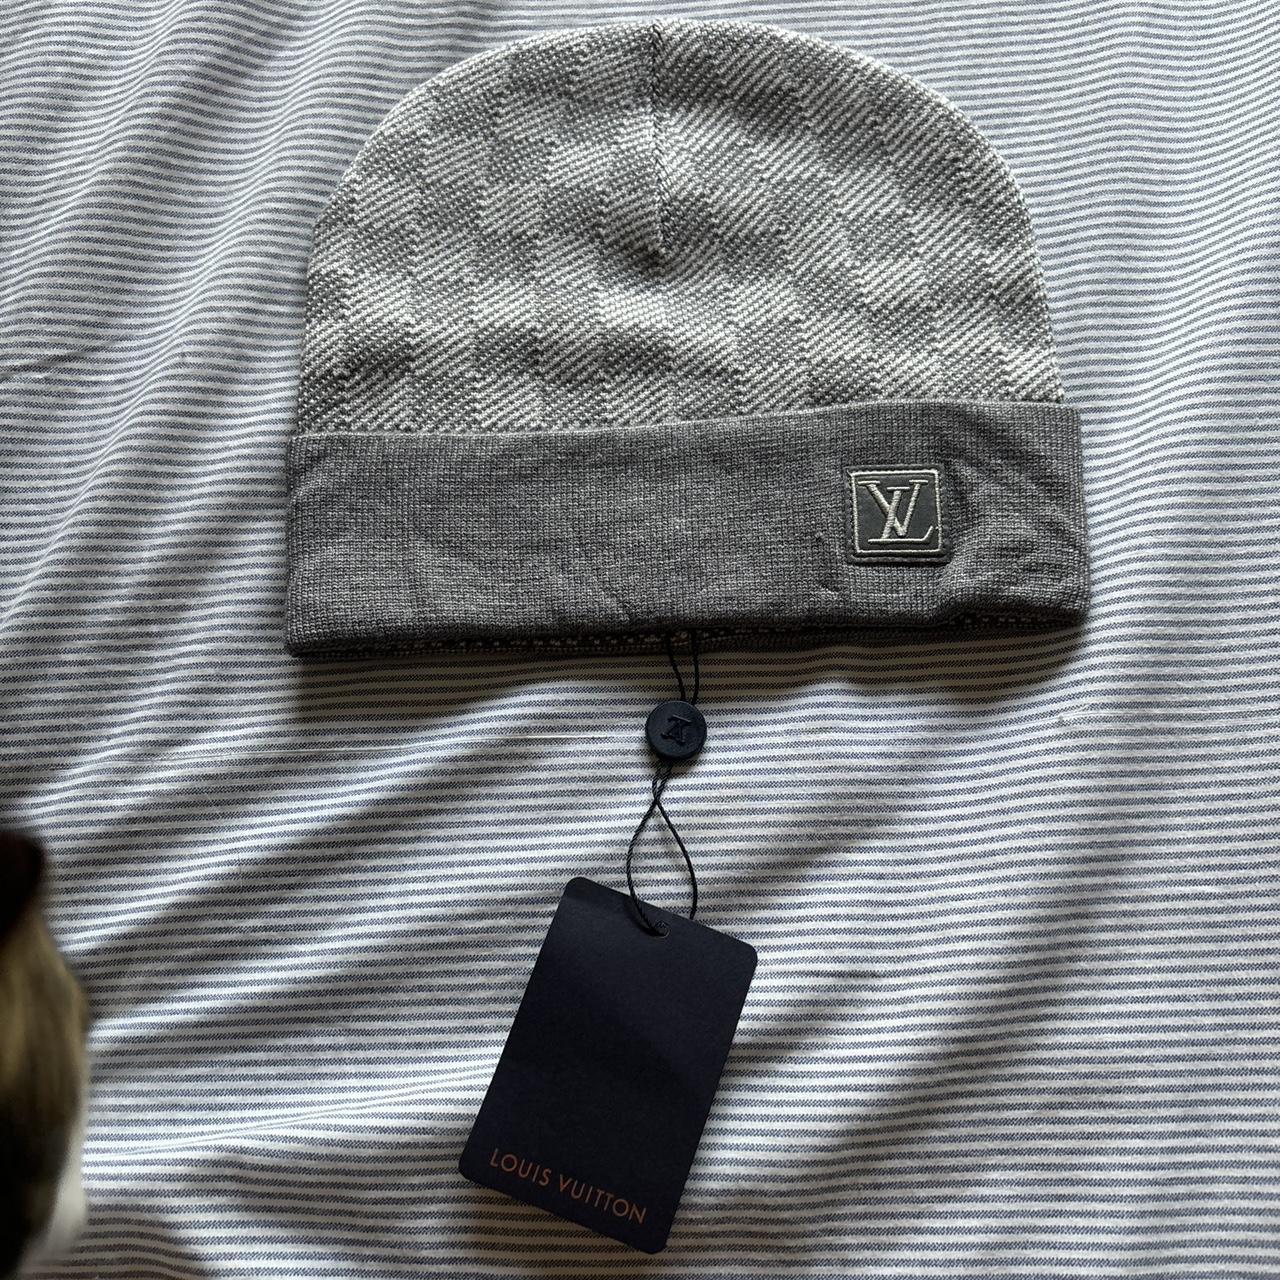 LV hat / scarf set - Depop